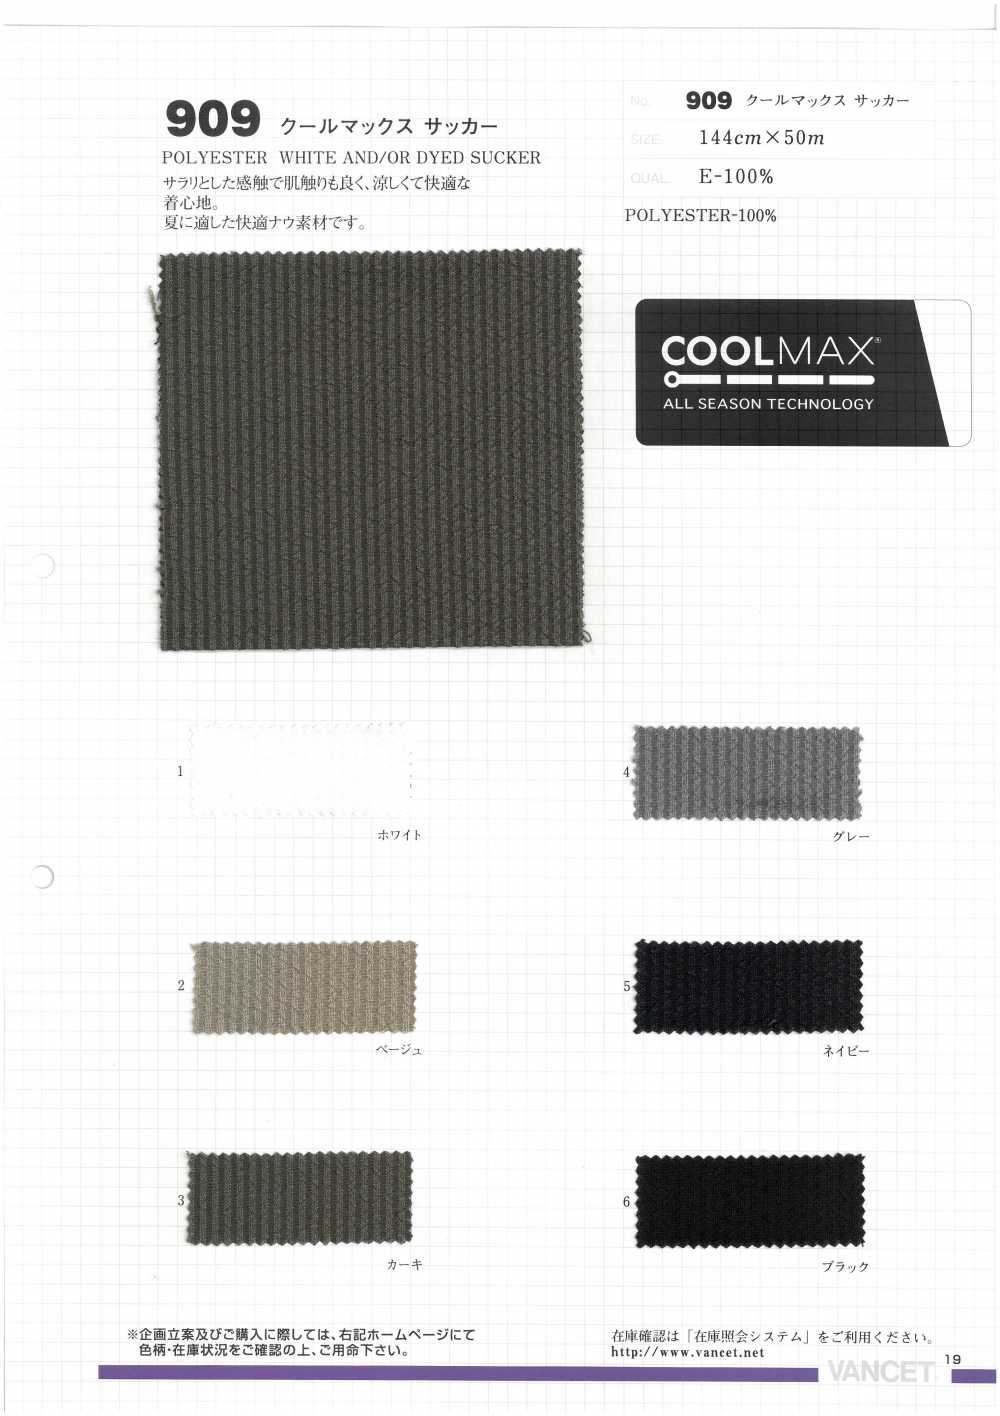 909 Coolmax Seersucker[Textile / Fabric] VANCET